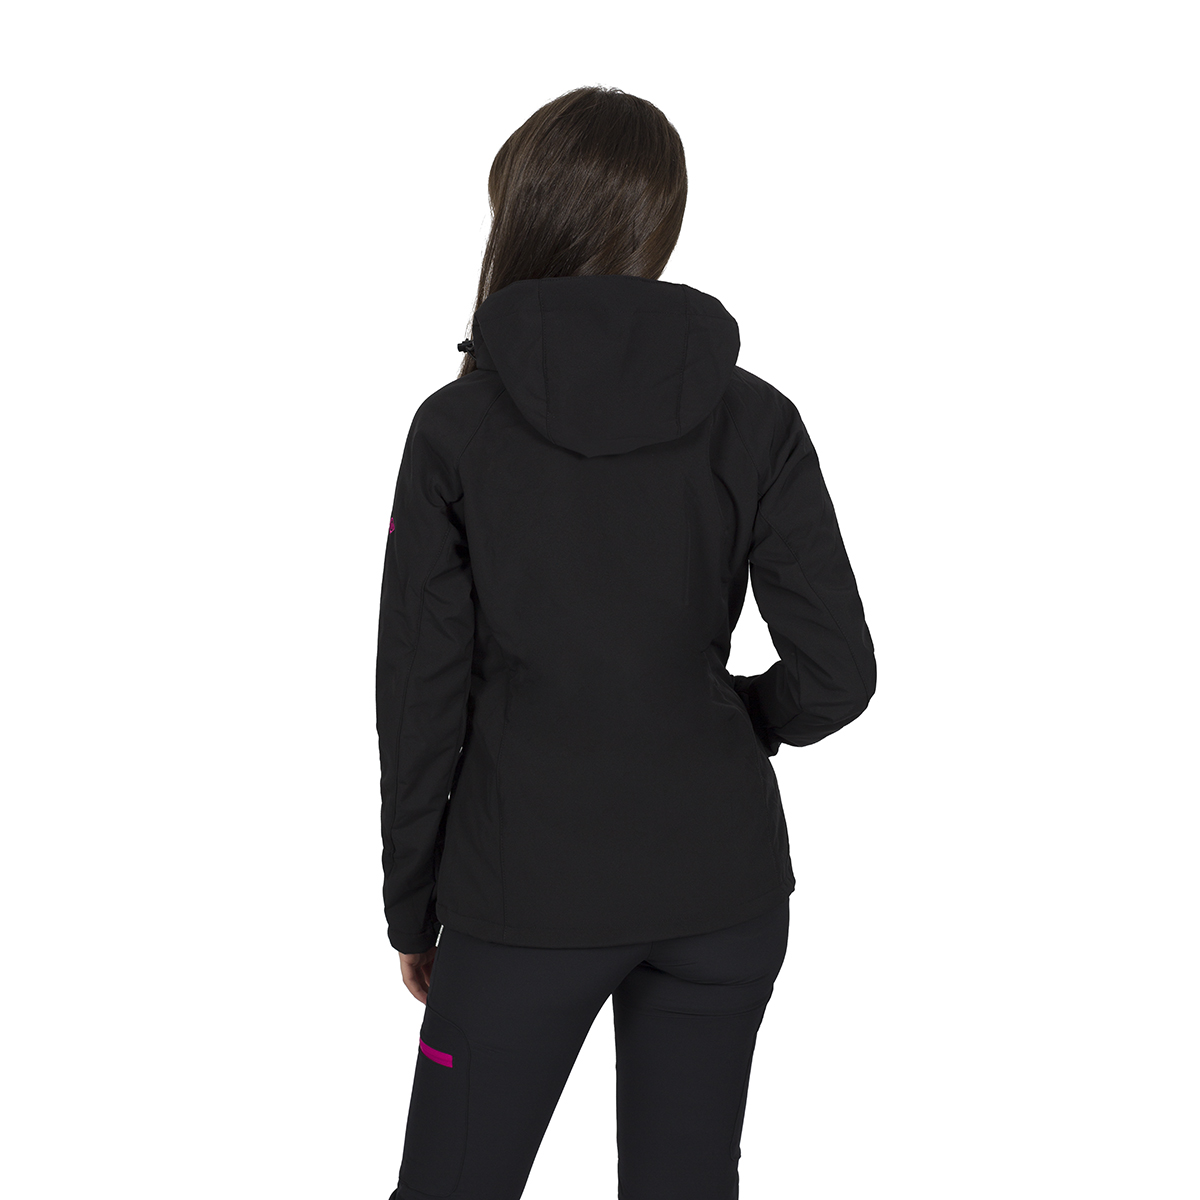 Izas Oshawa Women's Hooded Softshell Jacket (X-Large, Black/Fuchsia) - image 2 of 4